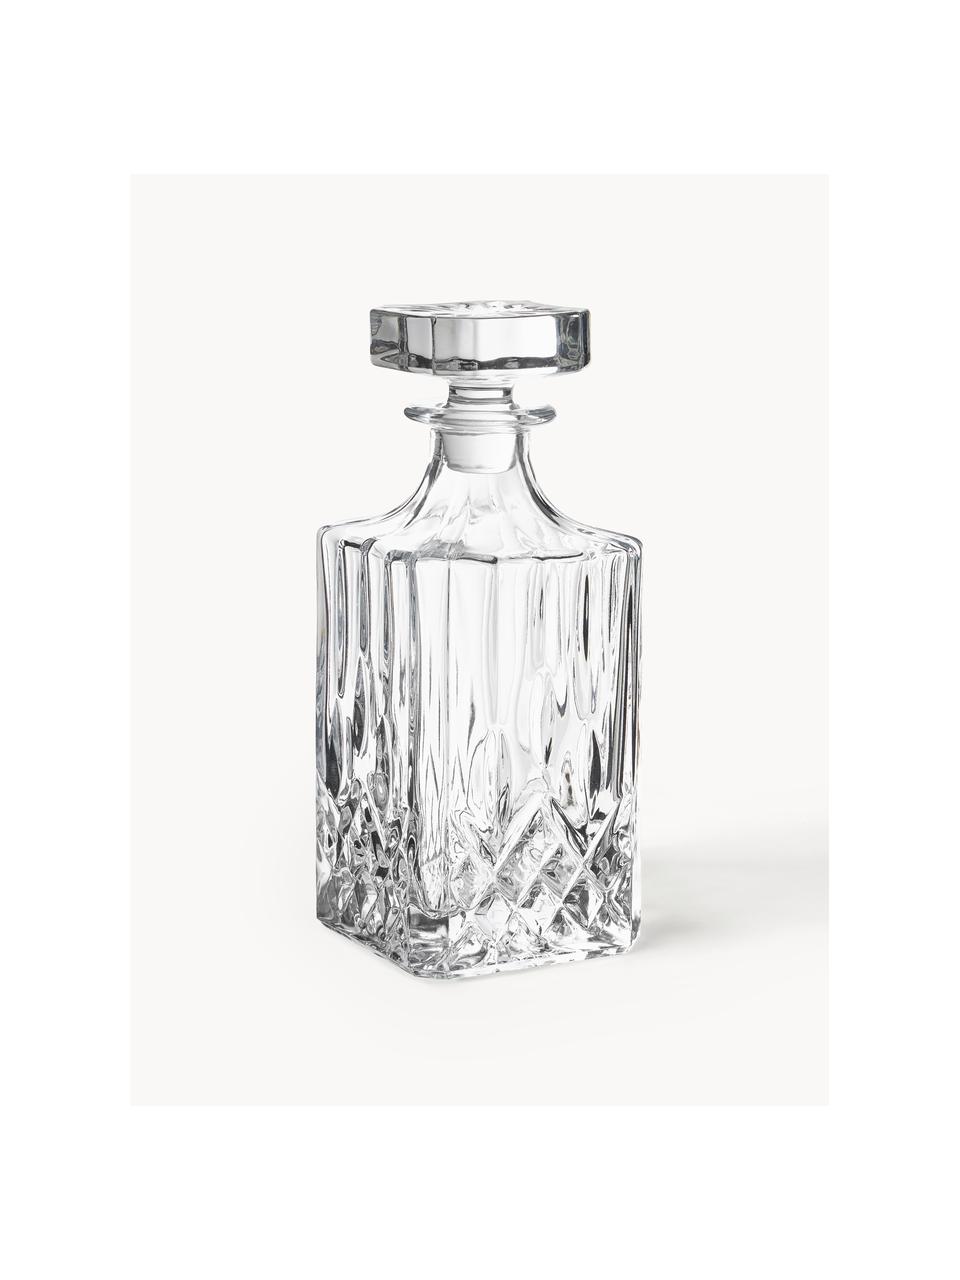 Whisky-Set George mit Kristallrelief, 3-tlg., Transparent, Set mit verschiedenen Grössen